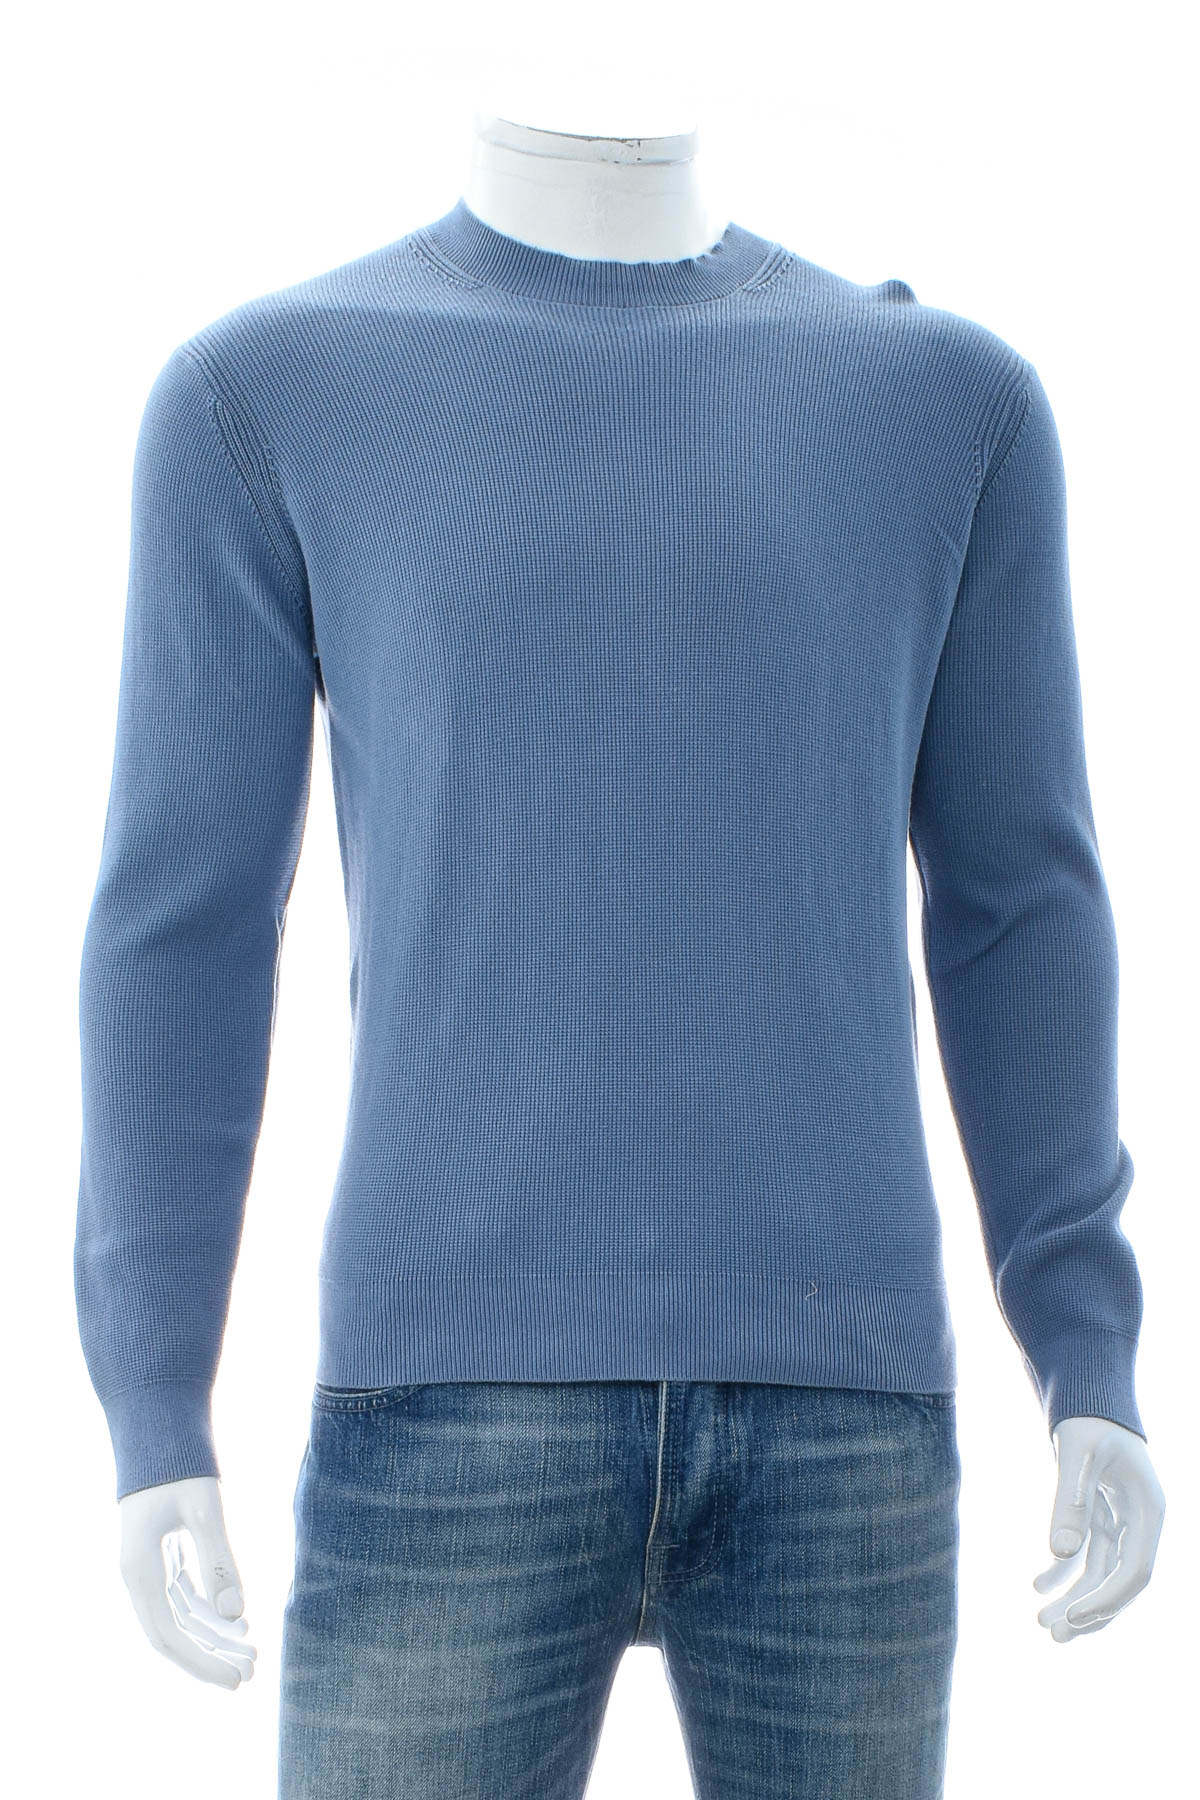 Men's sweater - Massimo Dutti - 0